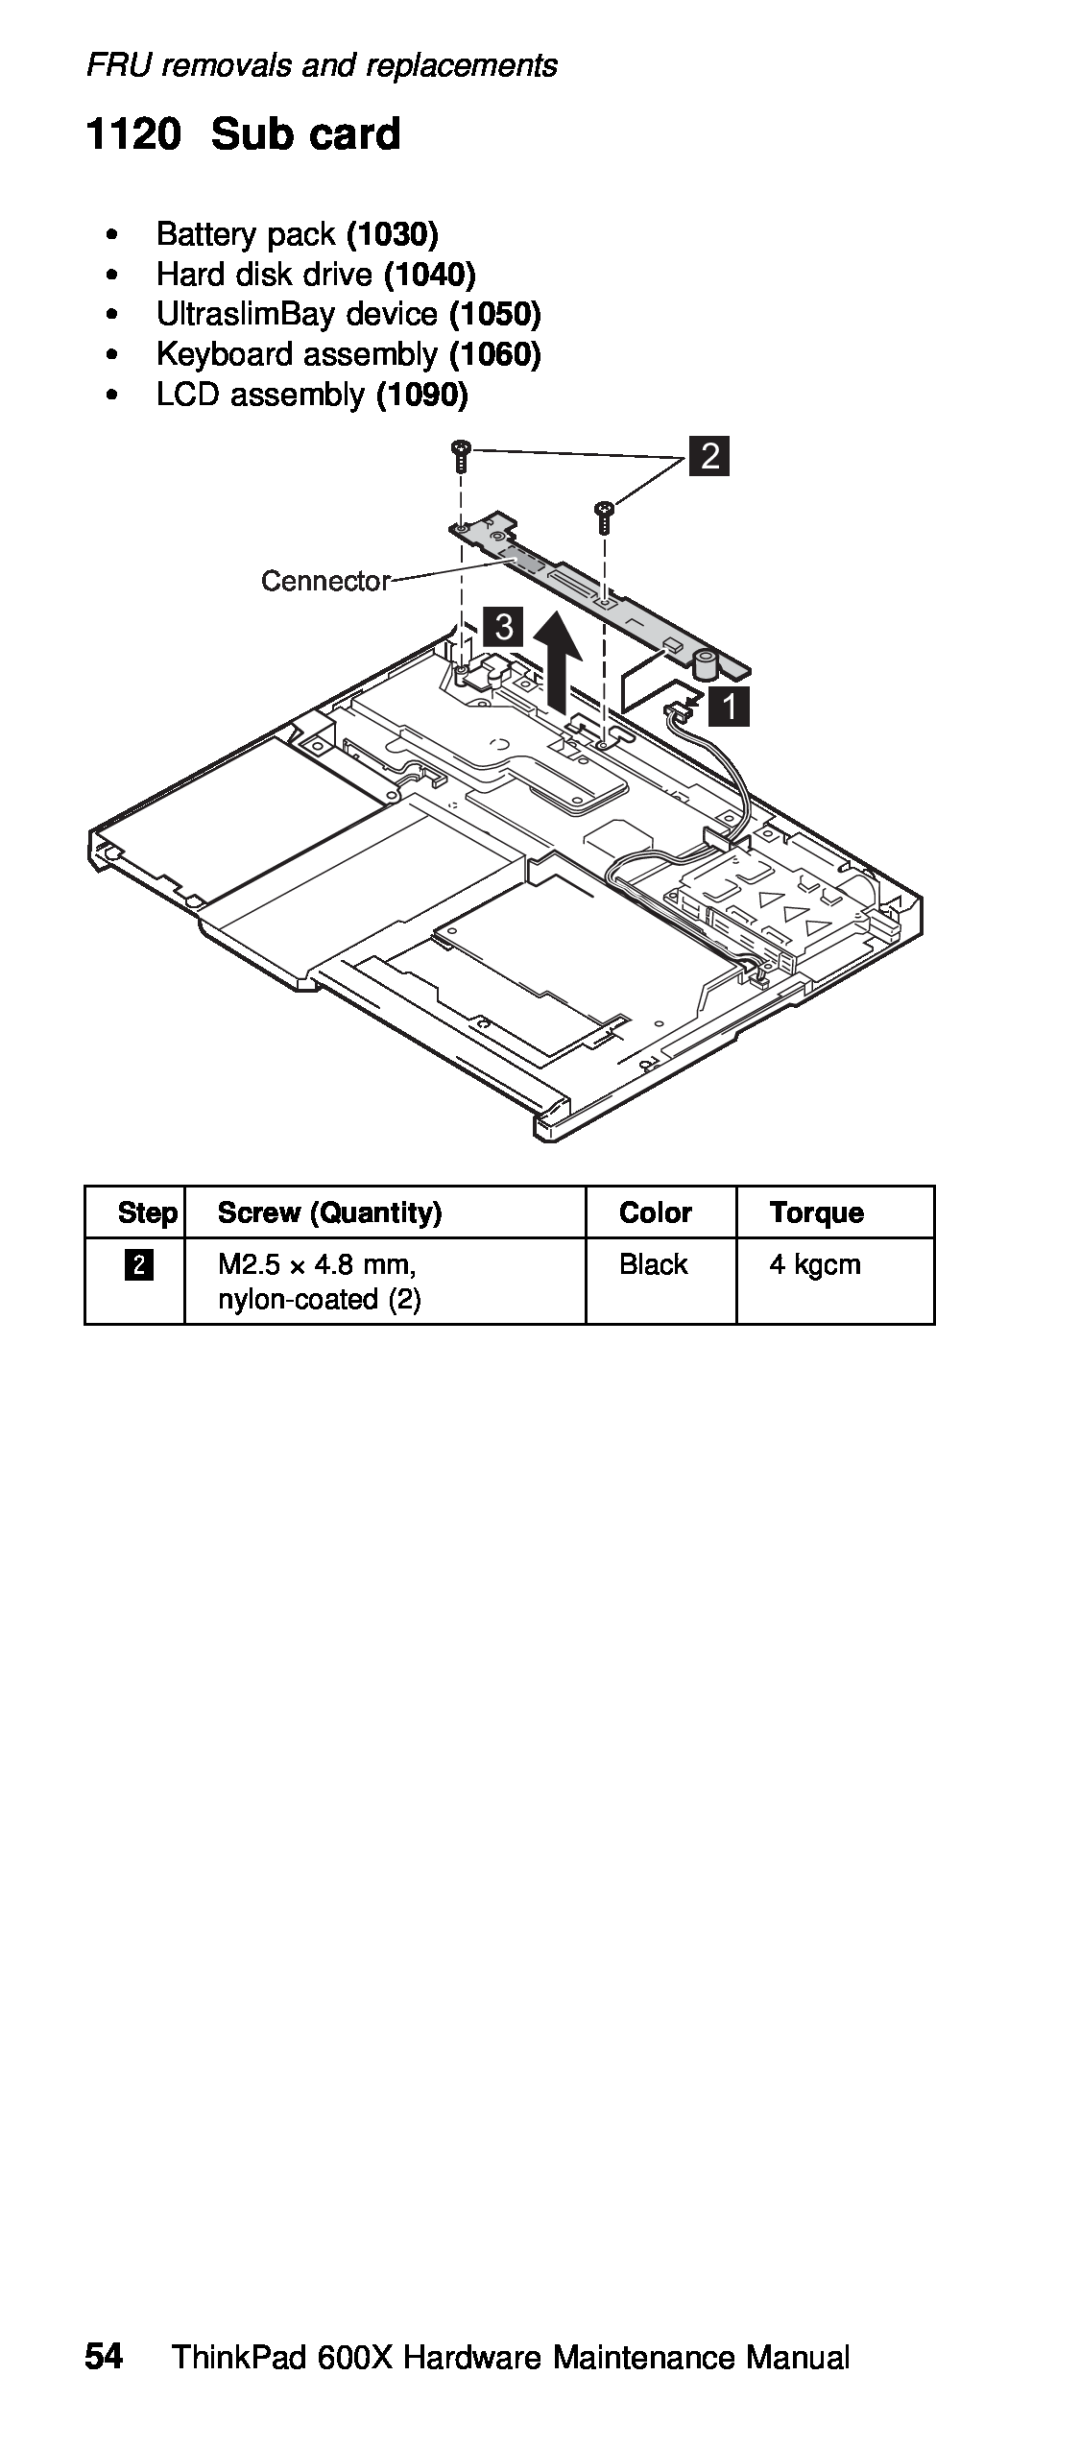 IBM 600X (MT 2646) manual Sub card, Cennector, Screw 